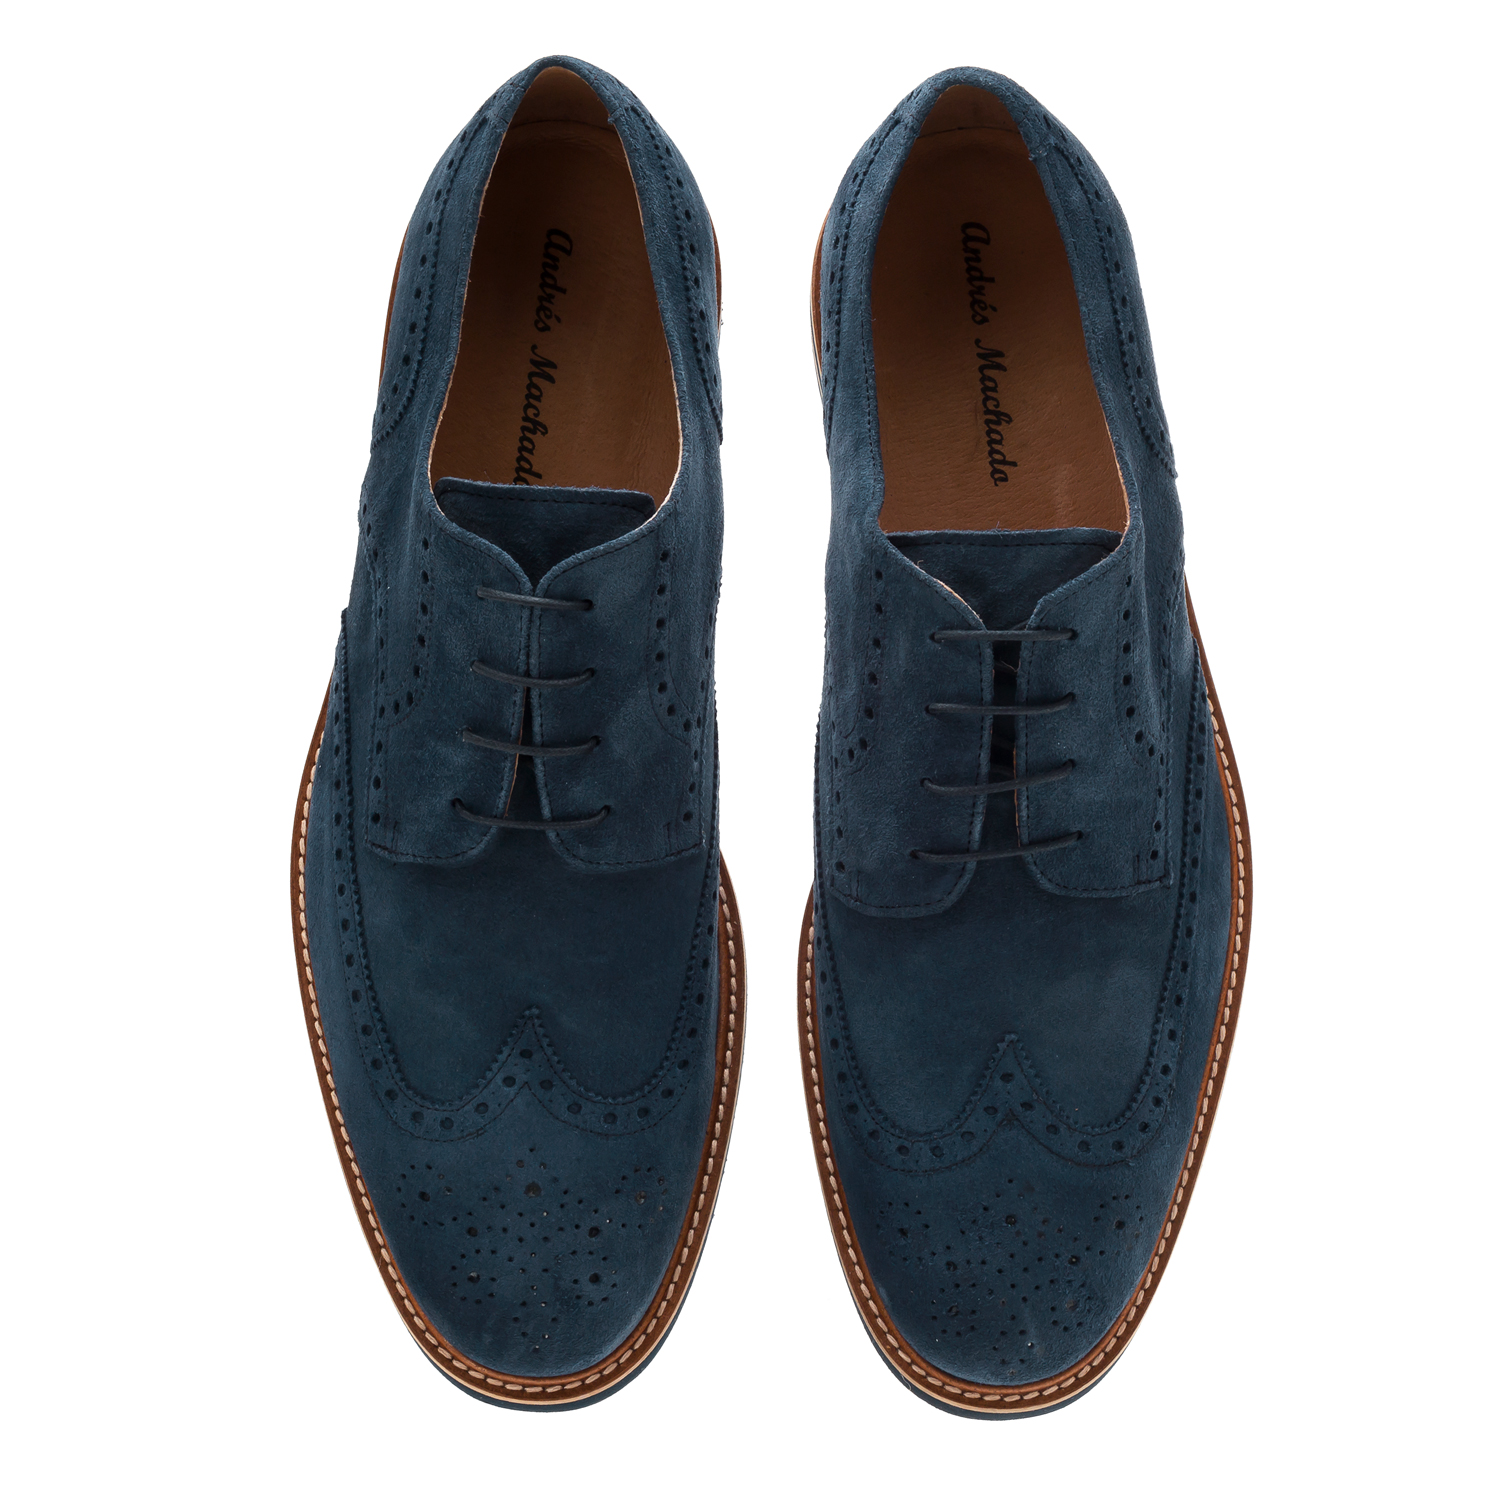 Schuhe im Oxford-Stil Rauleder Dunkelblau - MADE IN SPAIN - 